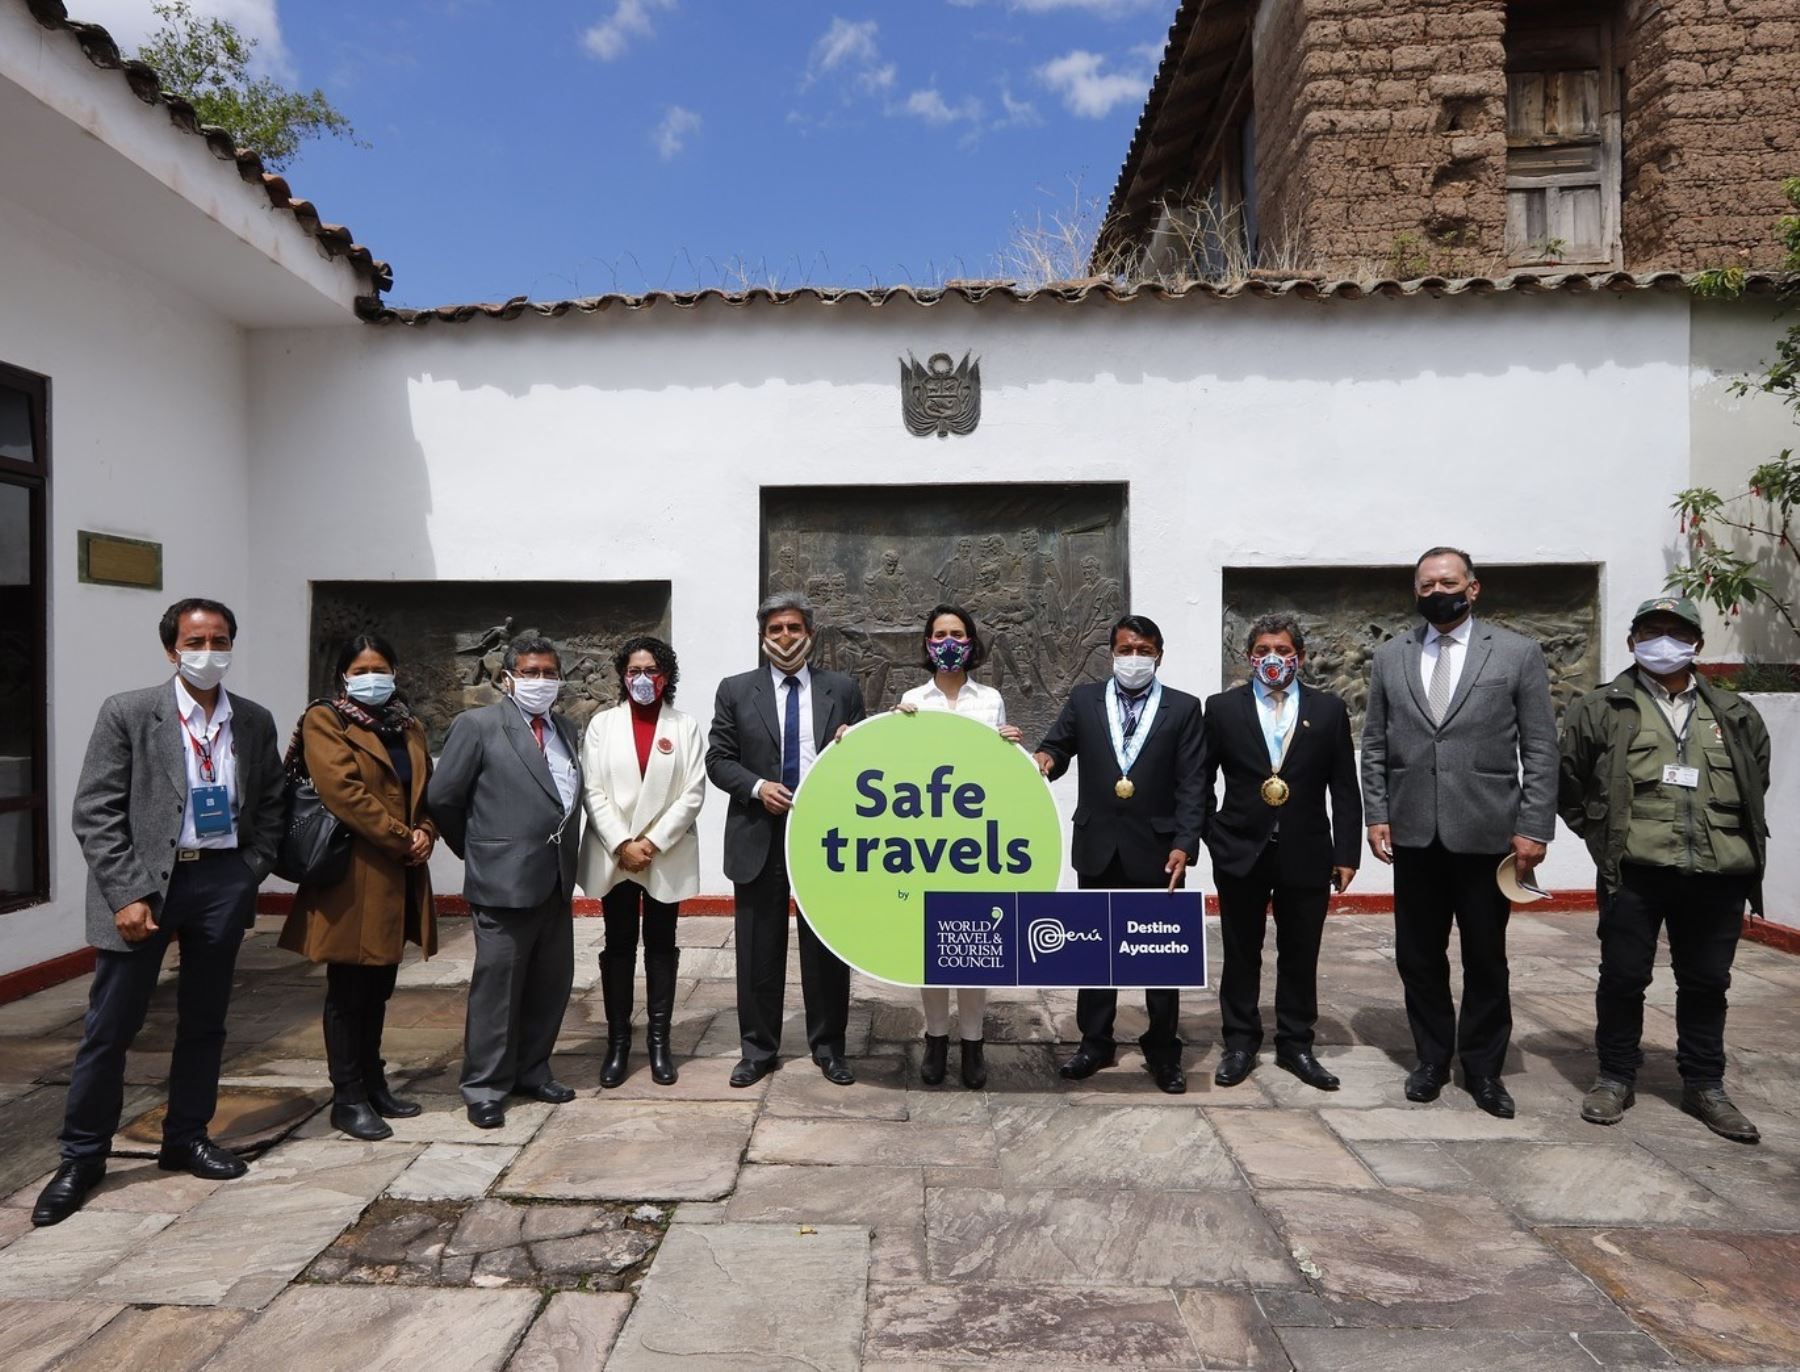 Ayacucho ya es un destino seguro y espera el pronto retorno de turistas. Hoy recibió el Sello Safe Travels de manos de la ministra de Comercio Exterior y Turismo, Claudia Cornejo.